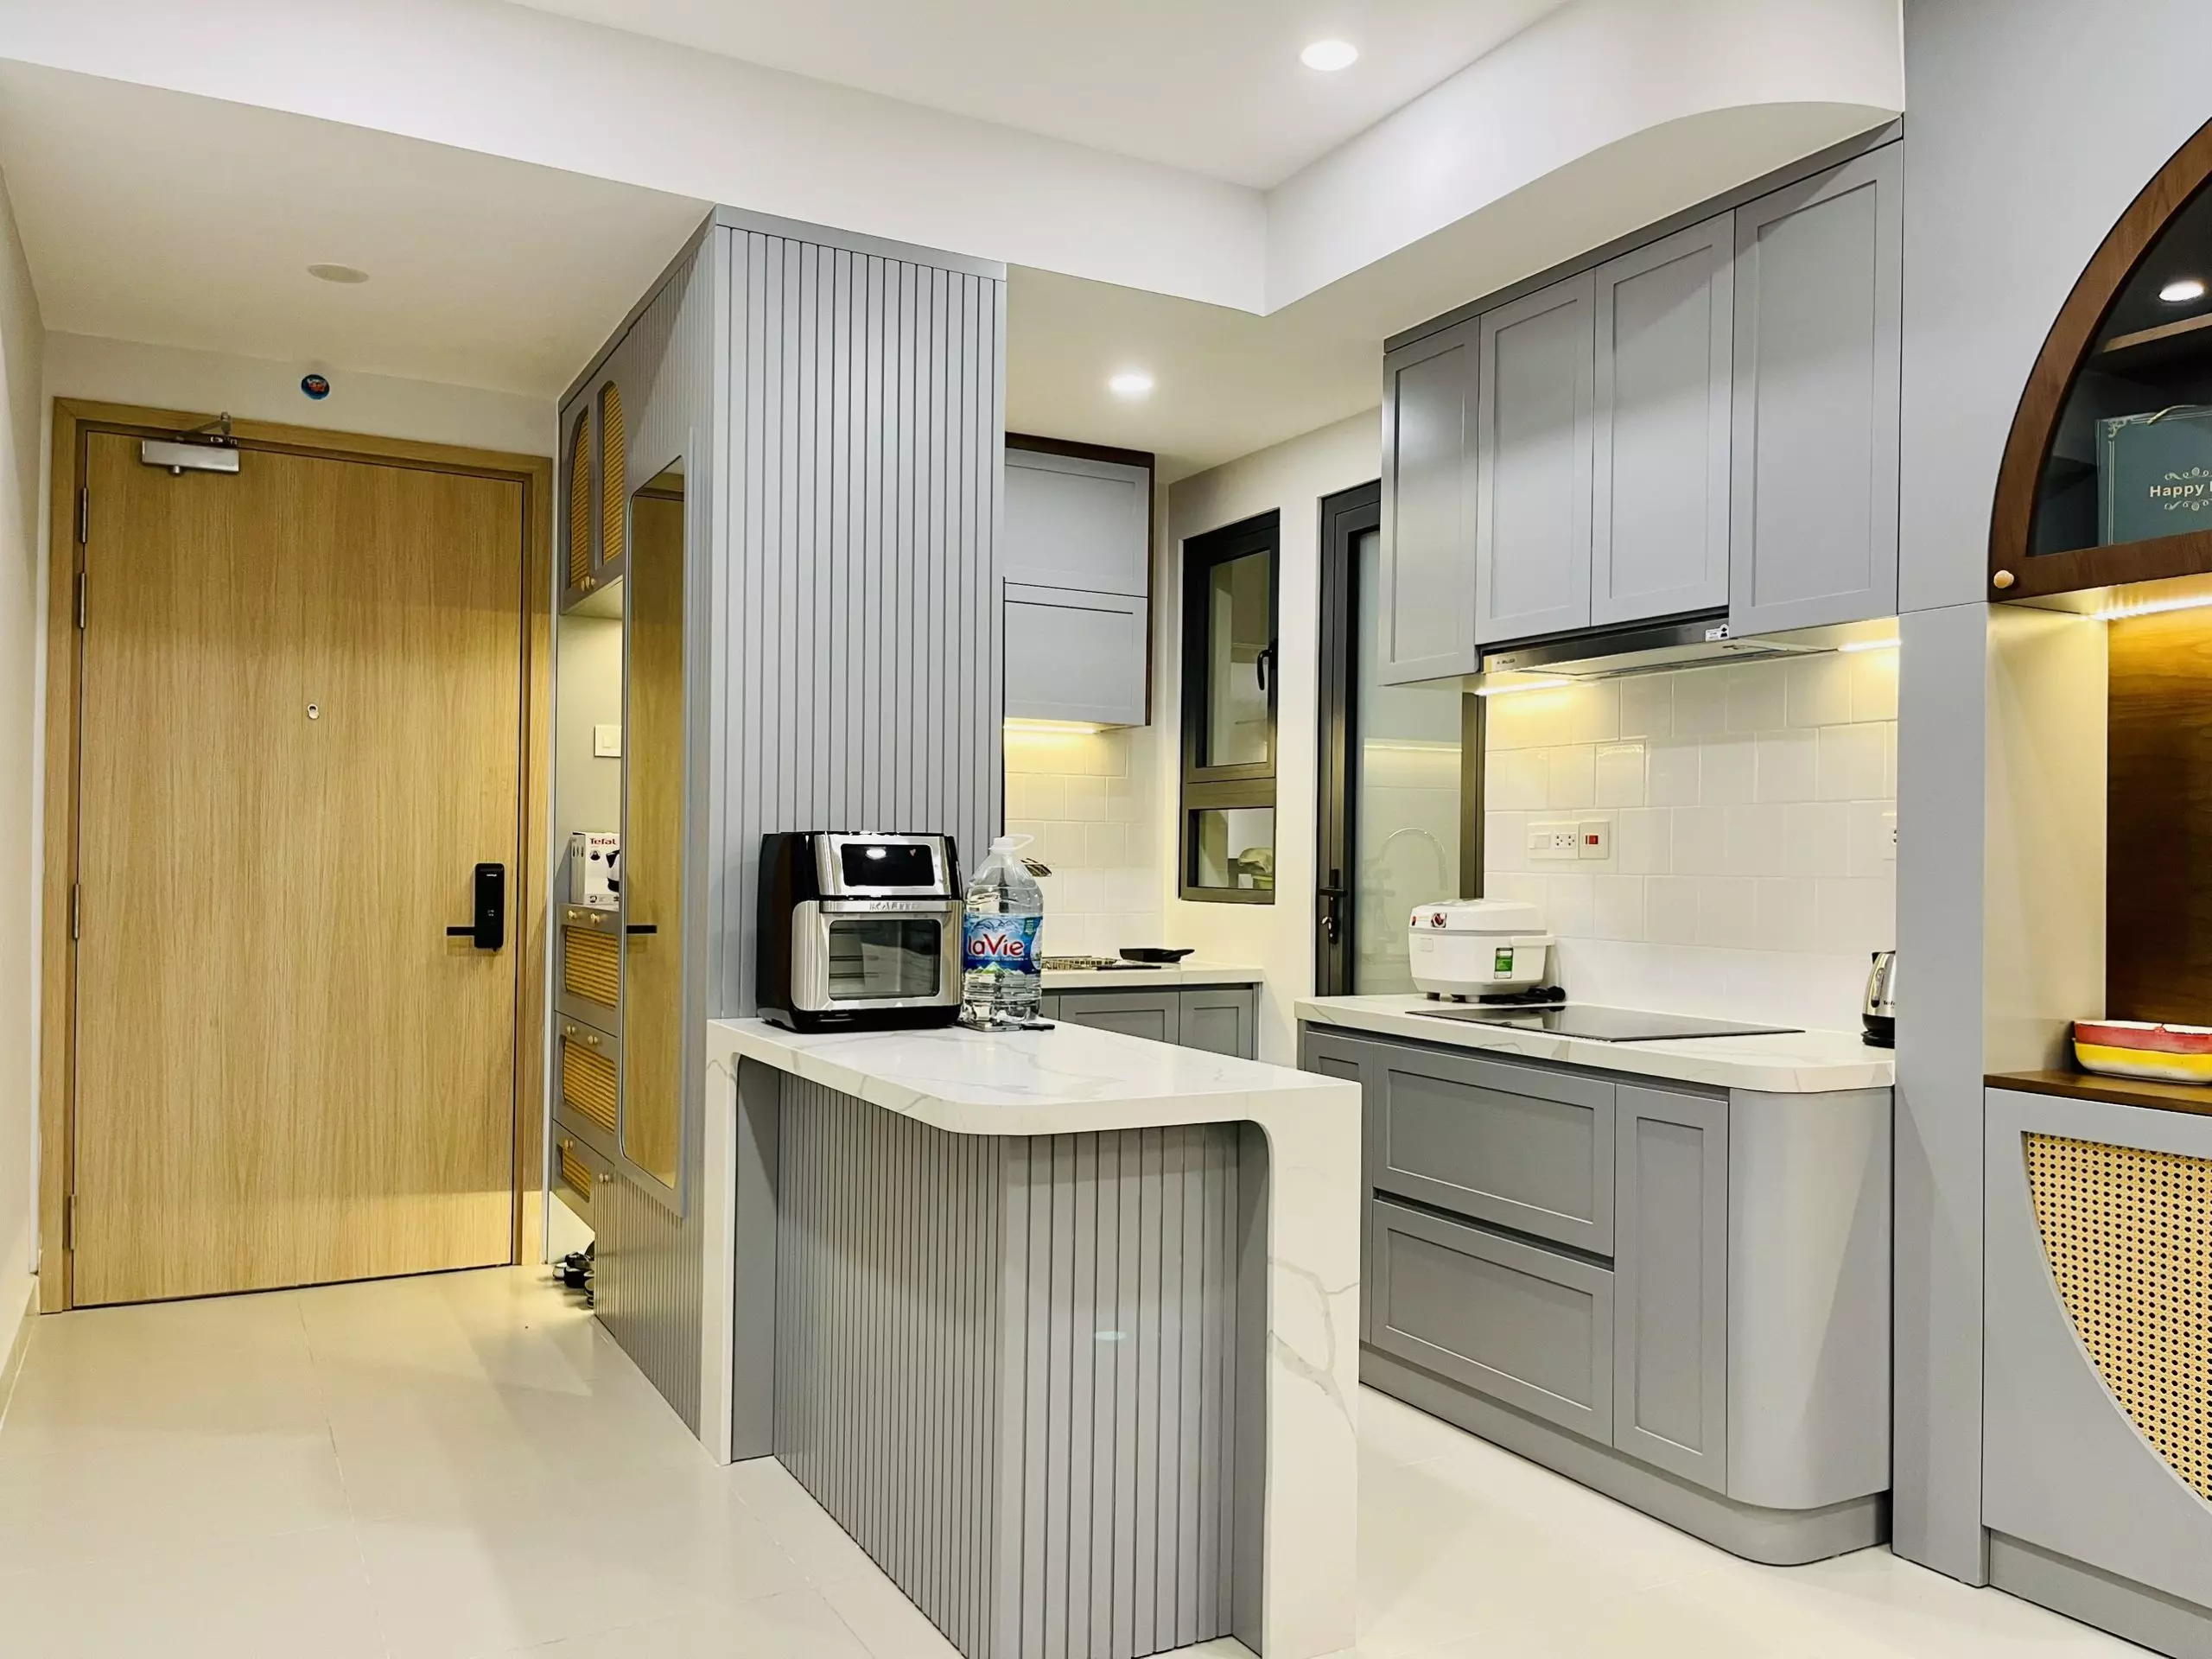 Thiết kế nội thất nhà liền kề thông minh - thiết kế hướng nhà bếp hợp phong thủy An Khoa Design